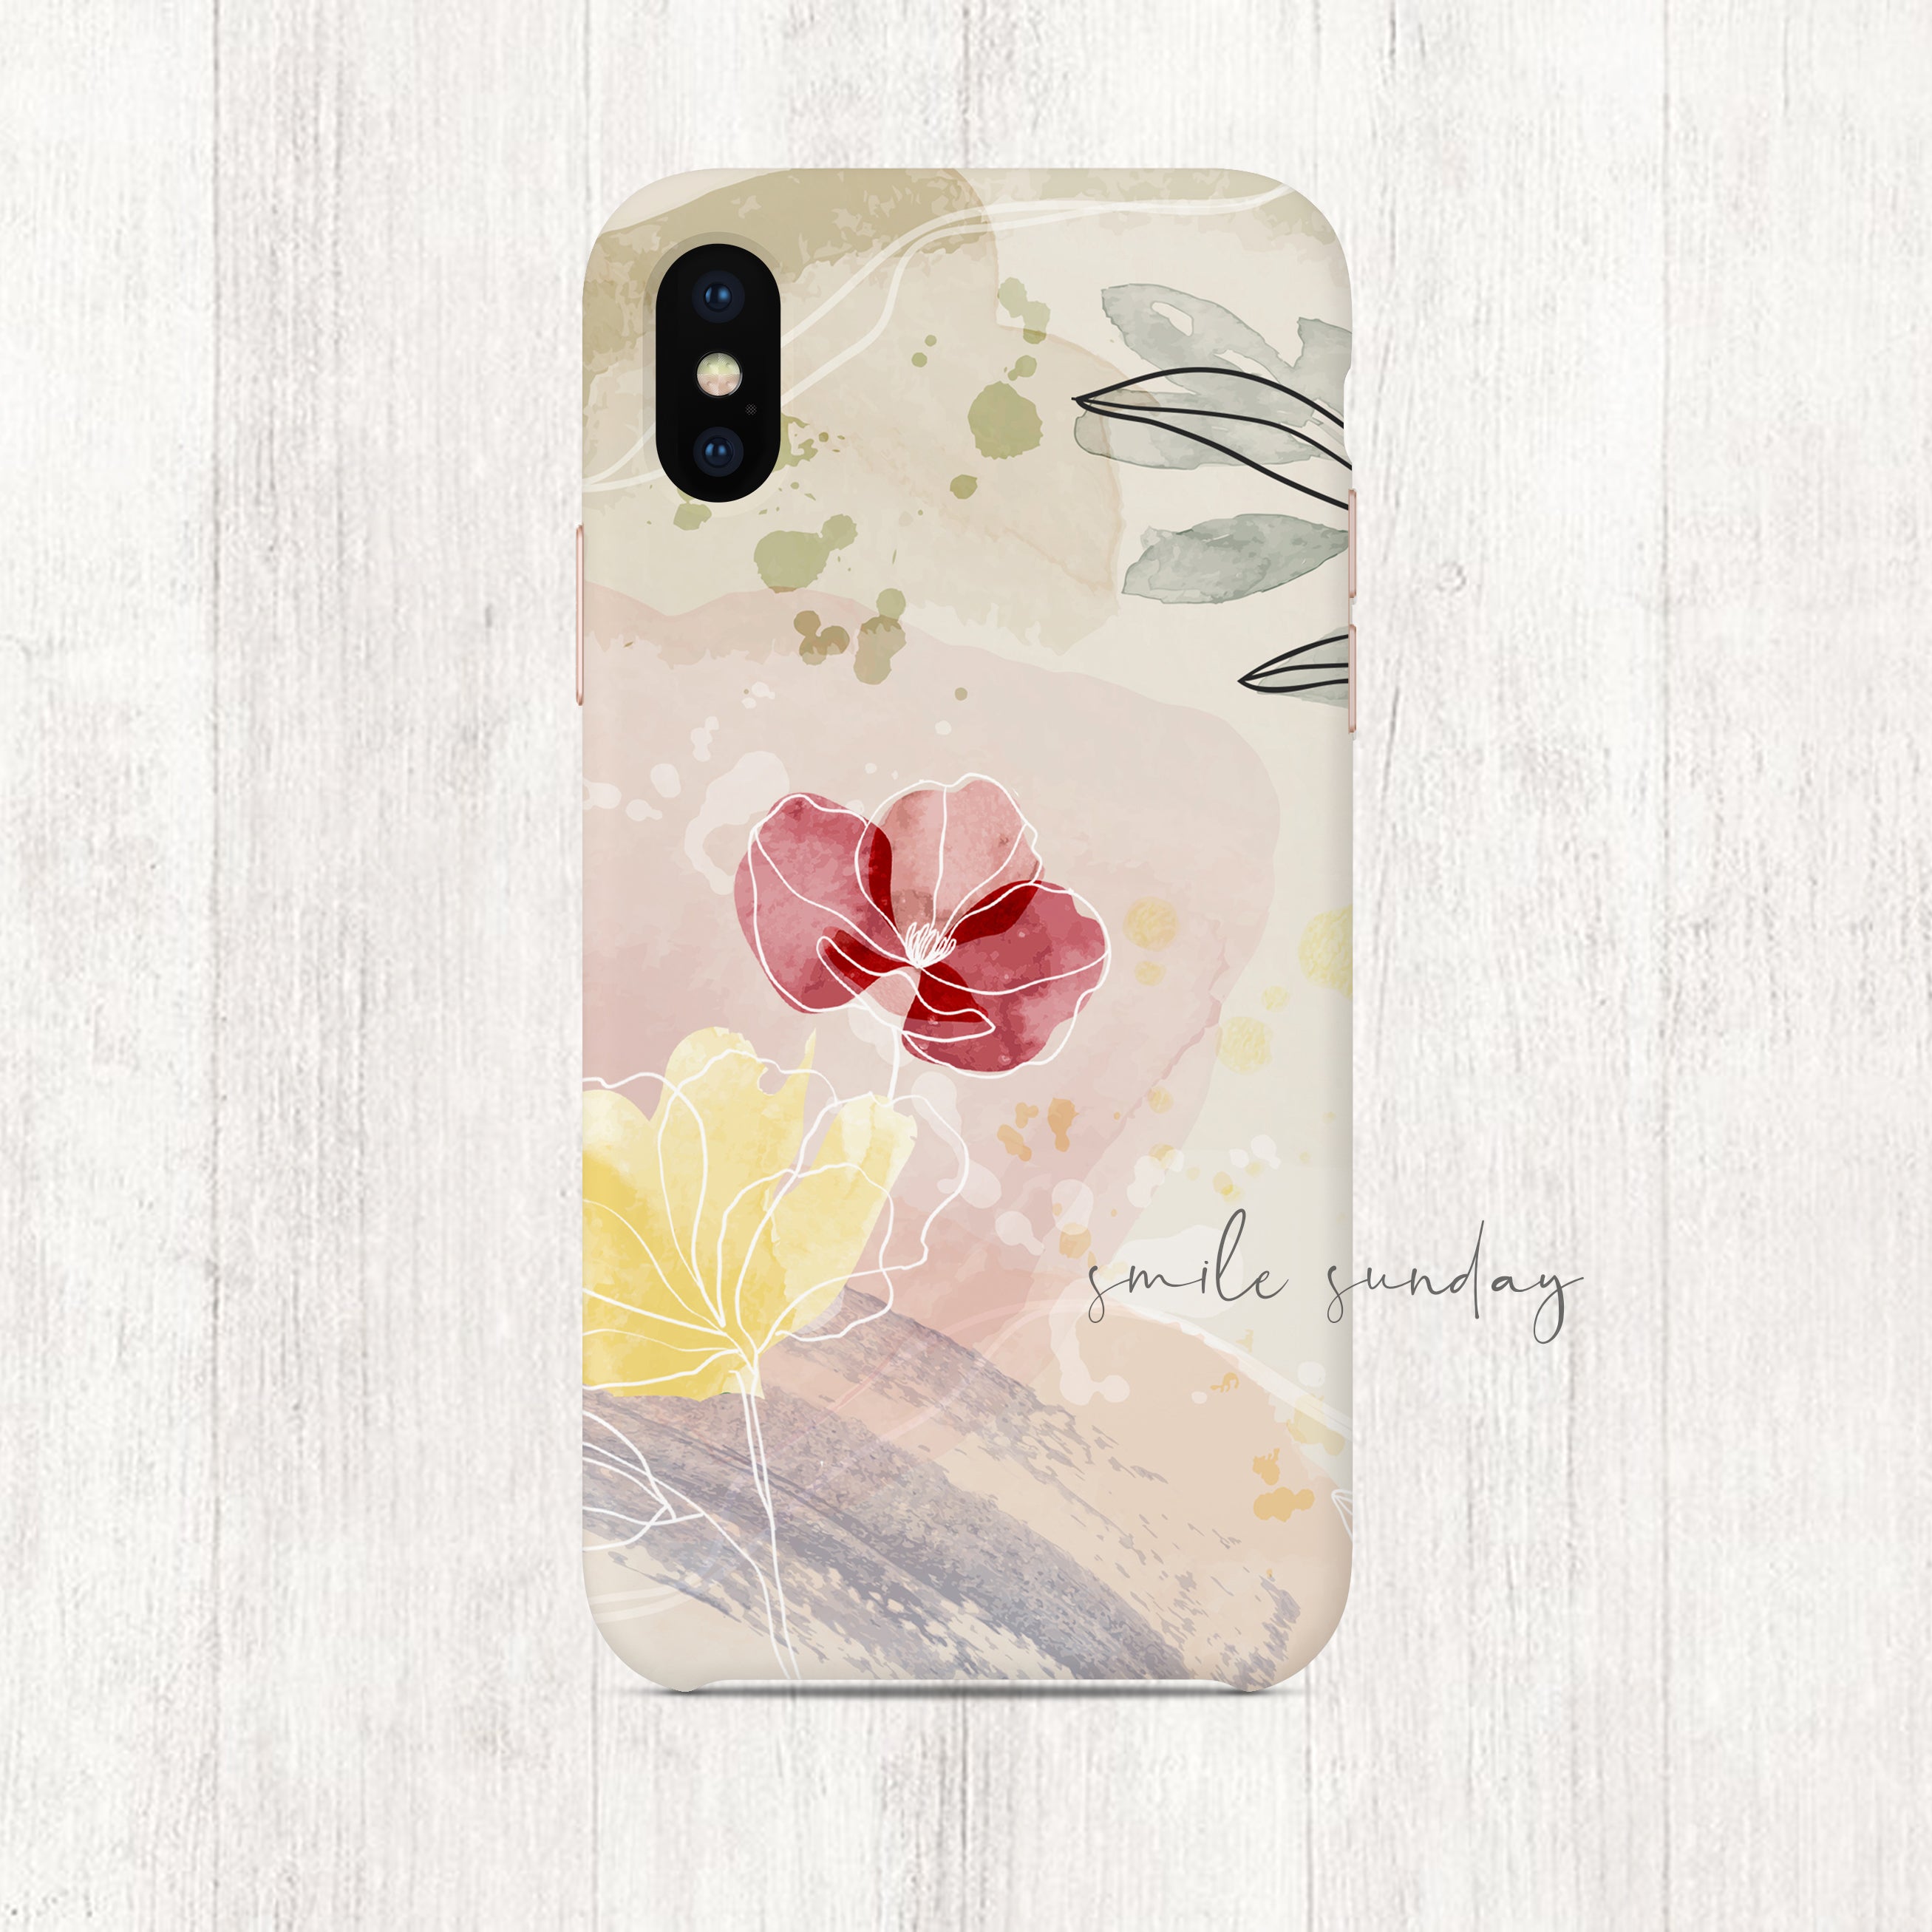 Bloom Dreams iPhone/Samsung Case